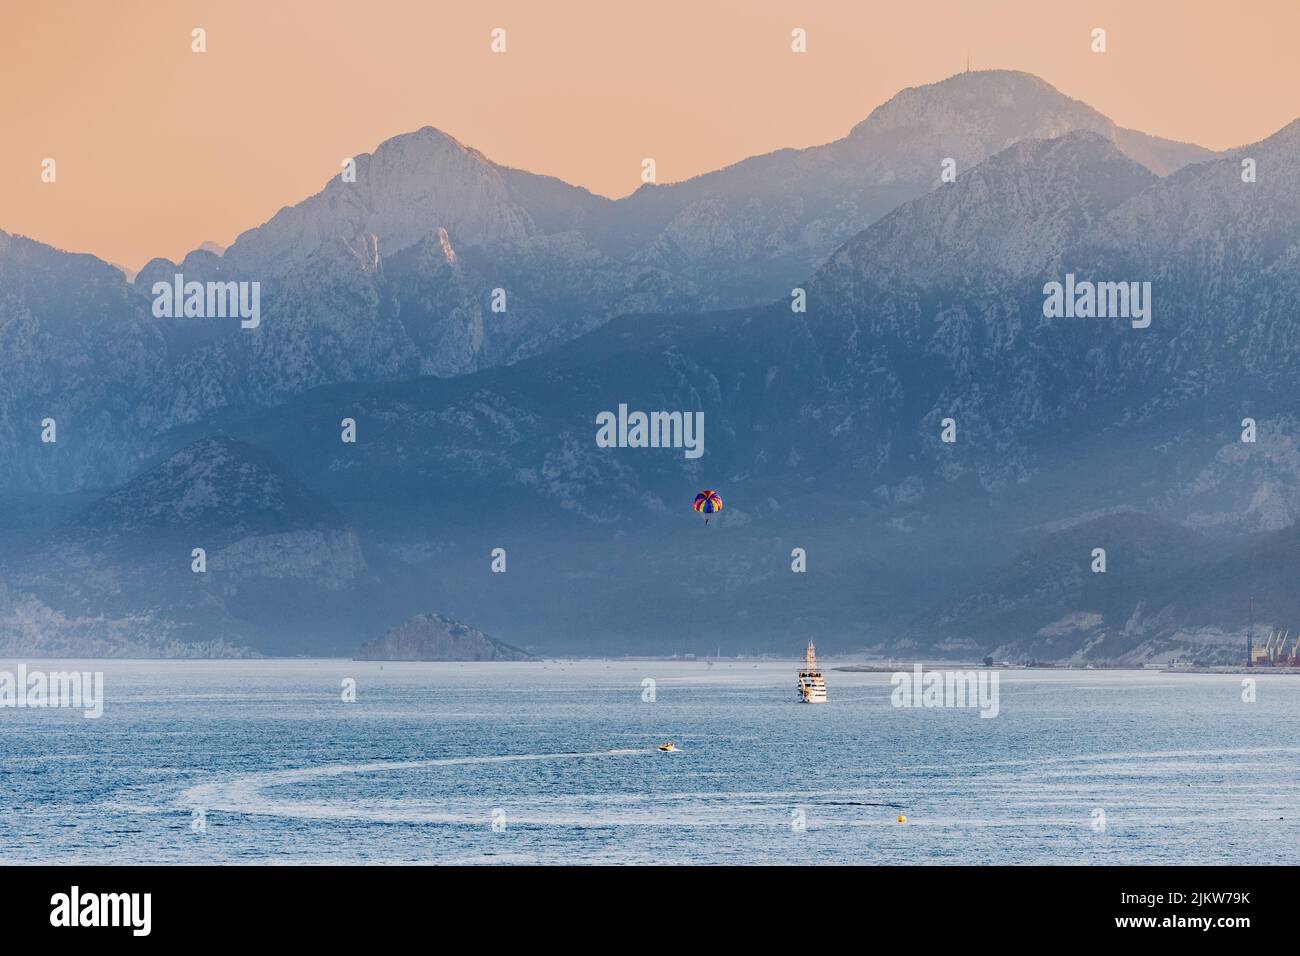 Vista de zoom distante de un barco turístico de crucero y paracaídas de deportes acuáticos con majestuosas montañas Tauro en la región de Antalya en Turquía Foto de stock